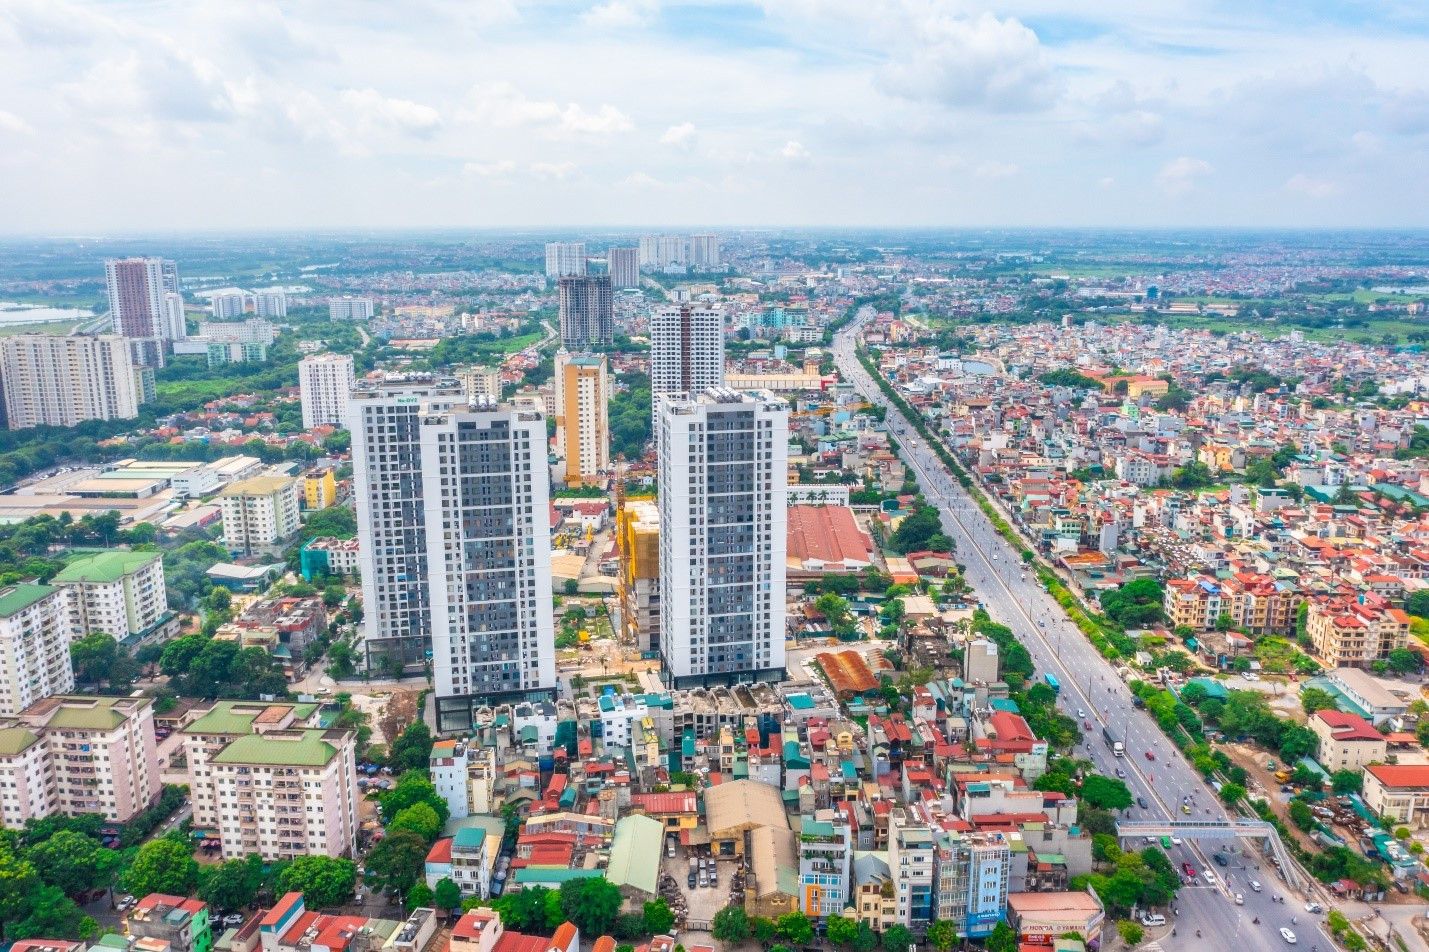 Sôi động thị trường nhà đất Hà Nội: Nhu cầu đầu tư từ phía Nam gia tăng